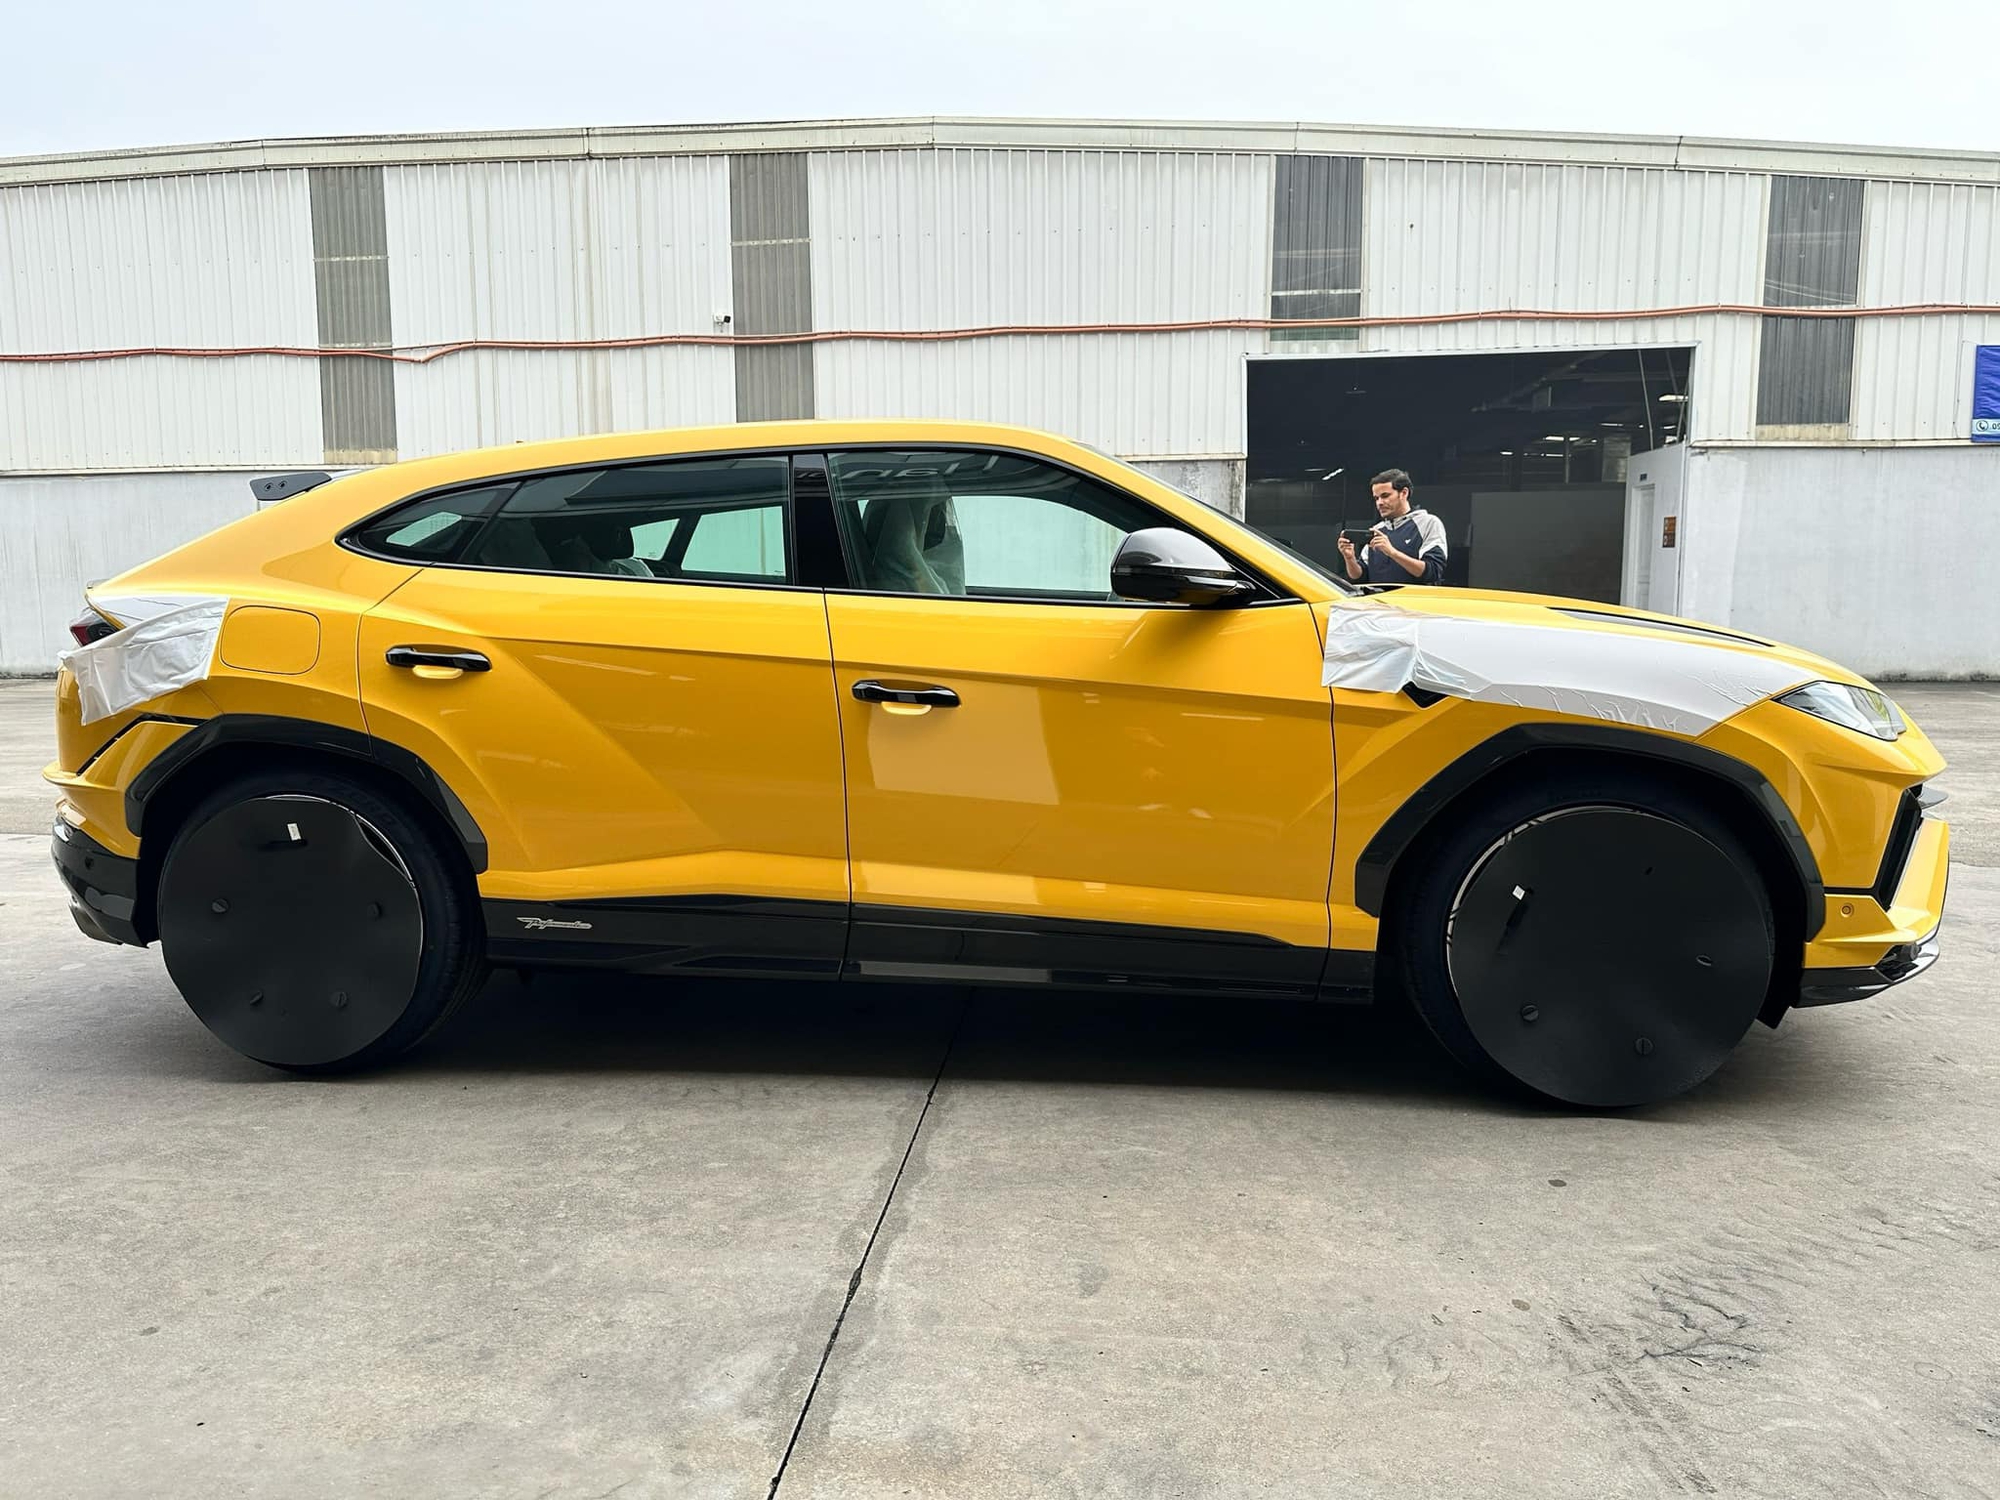 View - Được chồng tặng Lamborghini Urus Performante đúng dịp sinh nhật, Đoàn Di Băng công bố: "Sắp treo biển thần tài lớn mới trúng đấu giá"